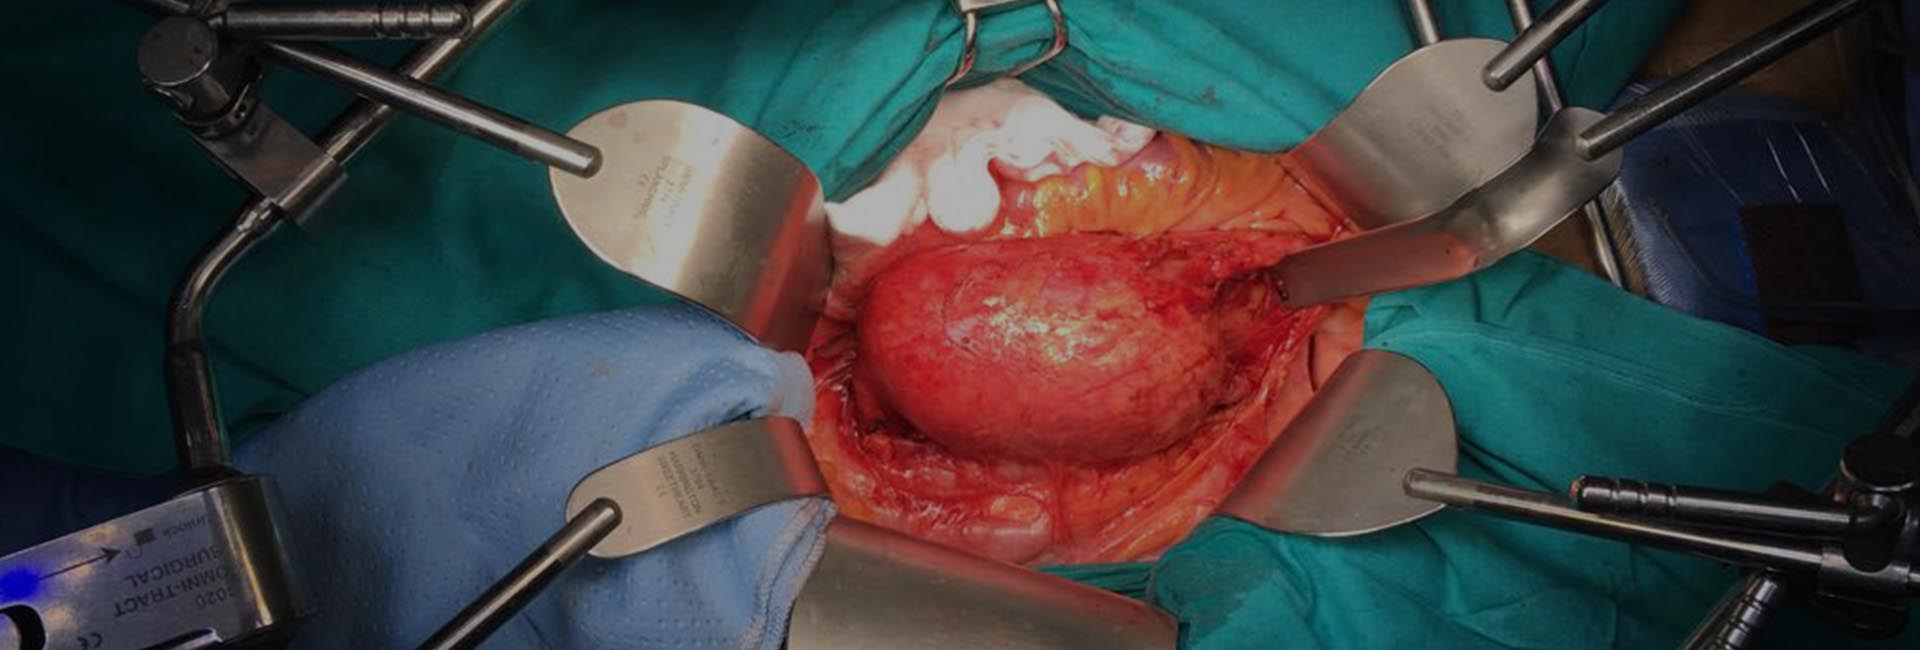 operazione di cardio chirurgia del dottor emerico ballo medico cardio chirurgo palermo